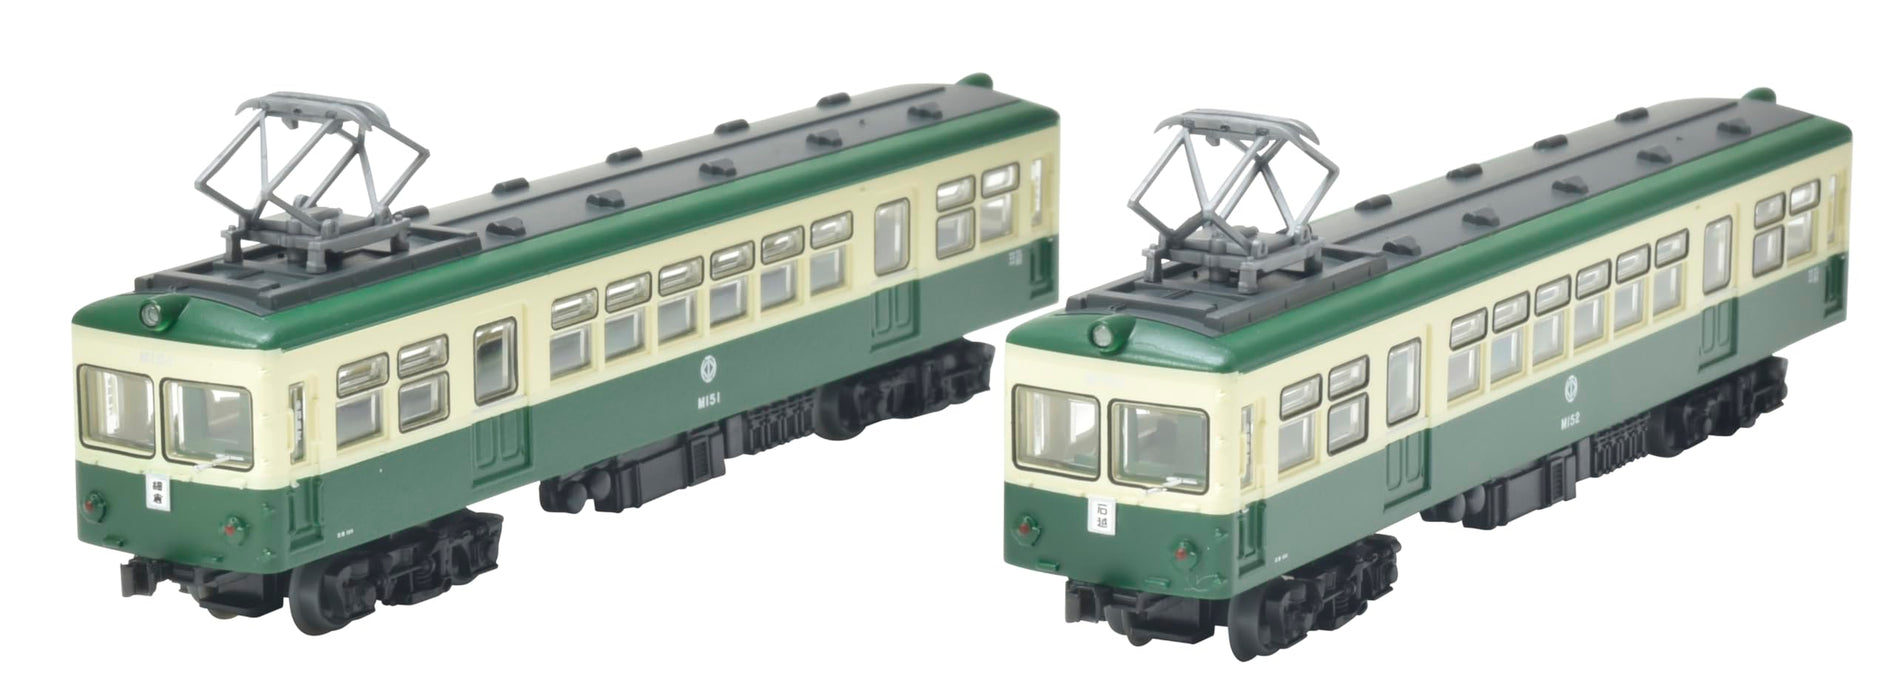 Tomytec Railway Collection Kurihara Electric 2-Car Set Cream Green Diorama Supplies